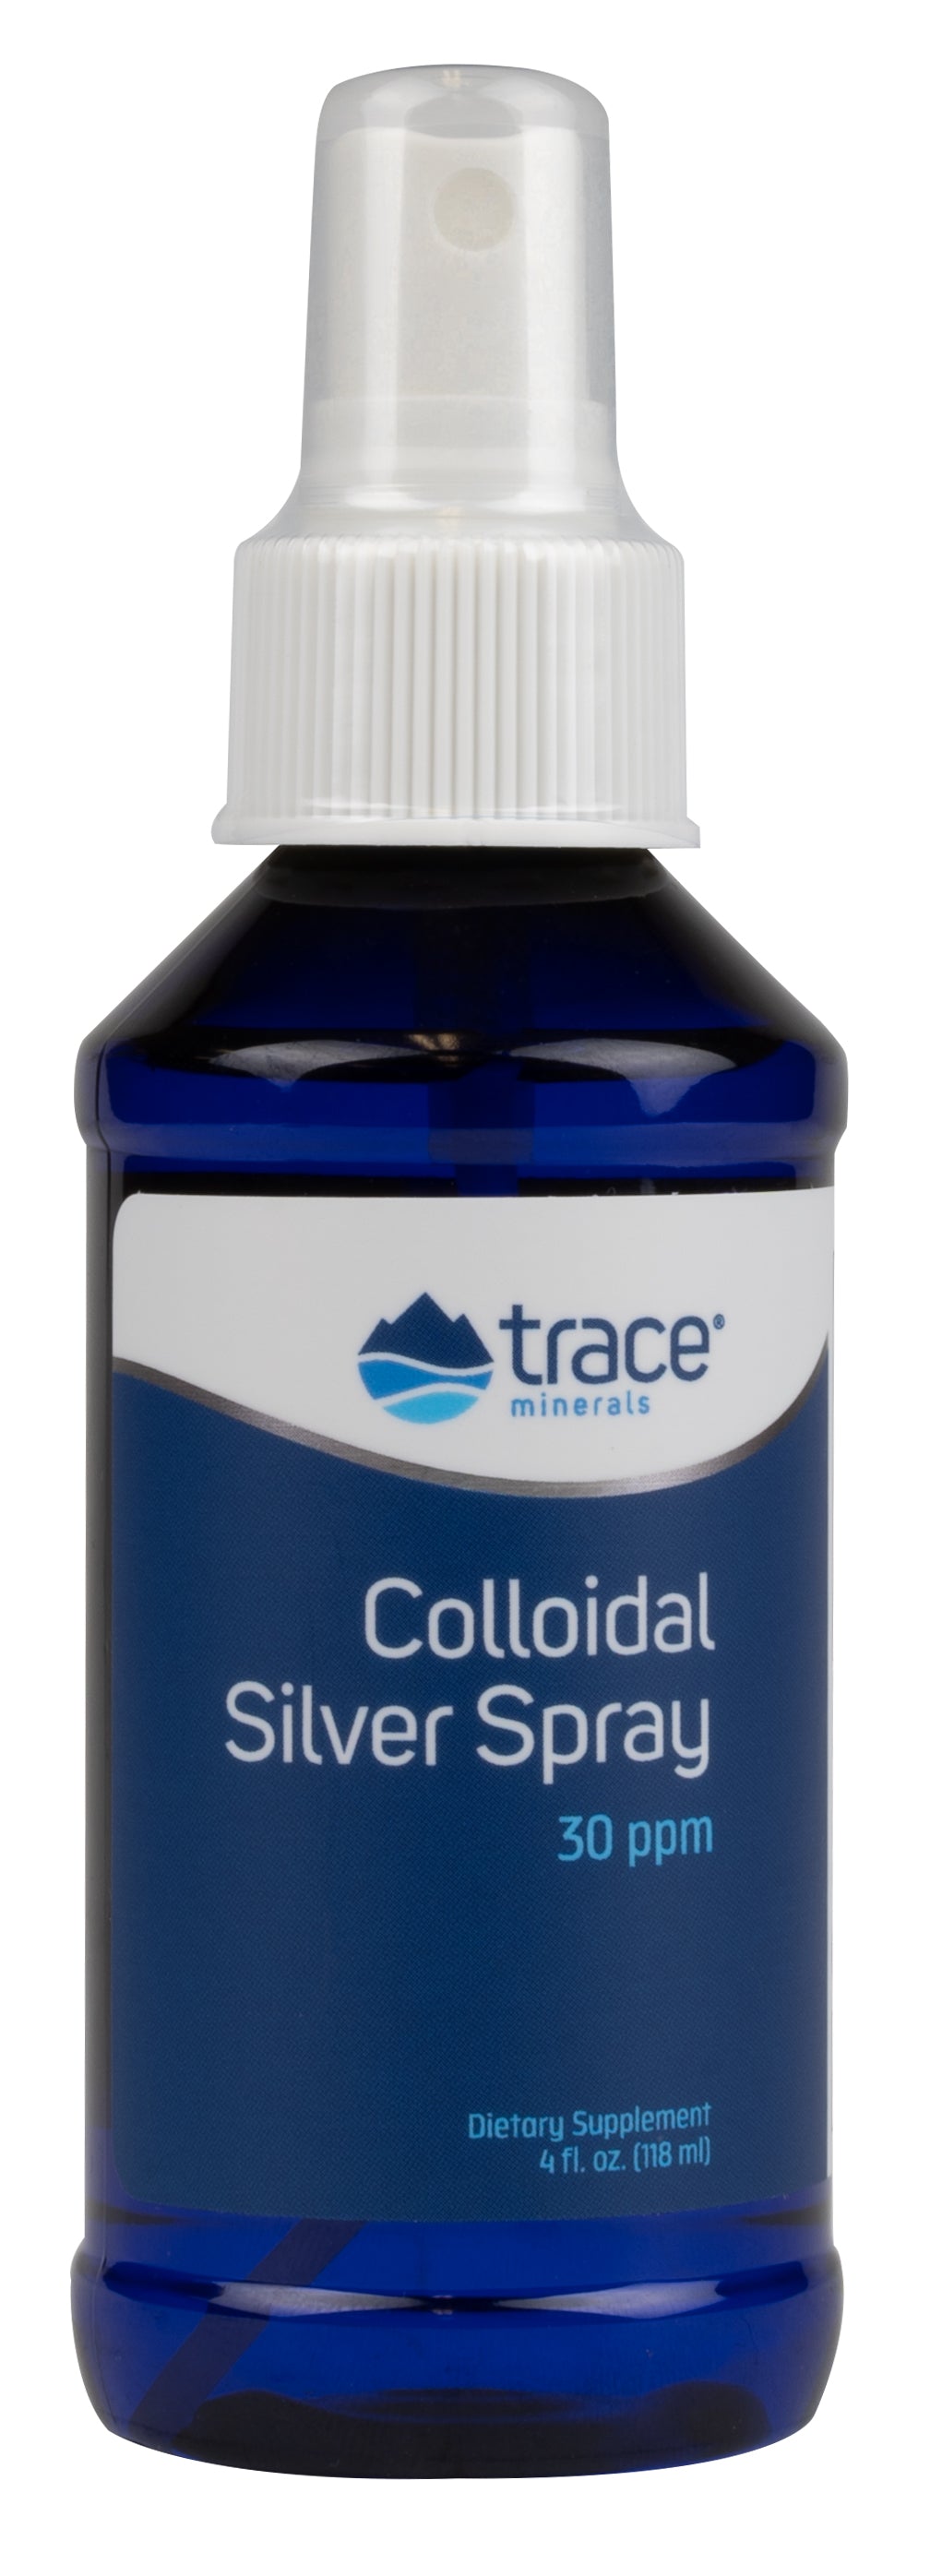 Colloidal Silver Spray 30 PPM